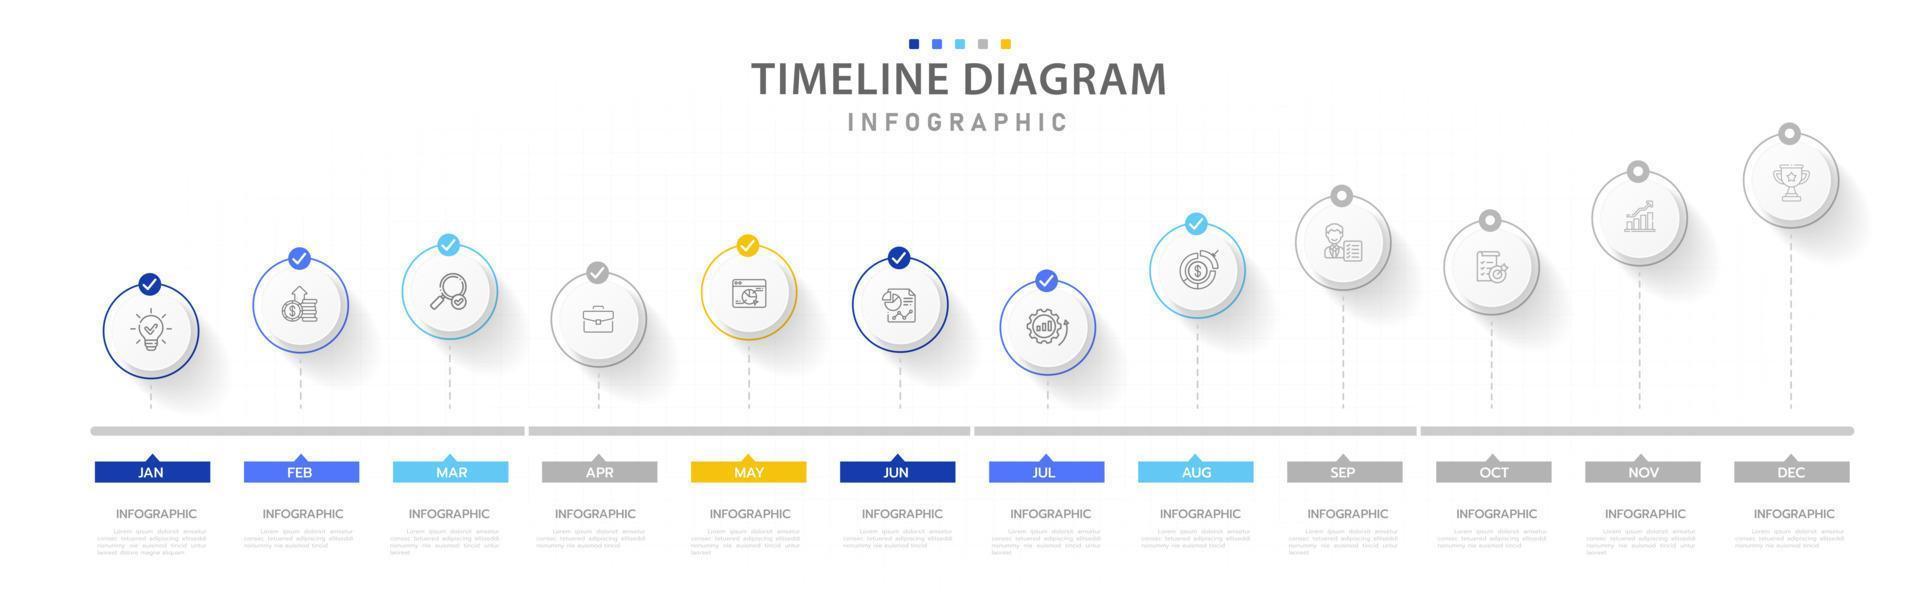 modelo de infográfico para negócios. Calendário de diagrama de linha do tempo moderno de 12 meses, infográfico de vetor de apresentação.